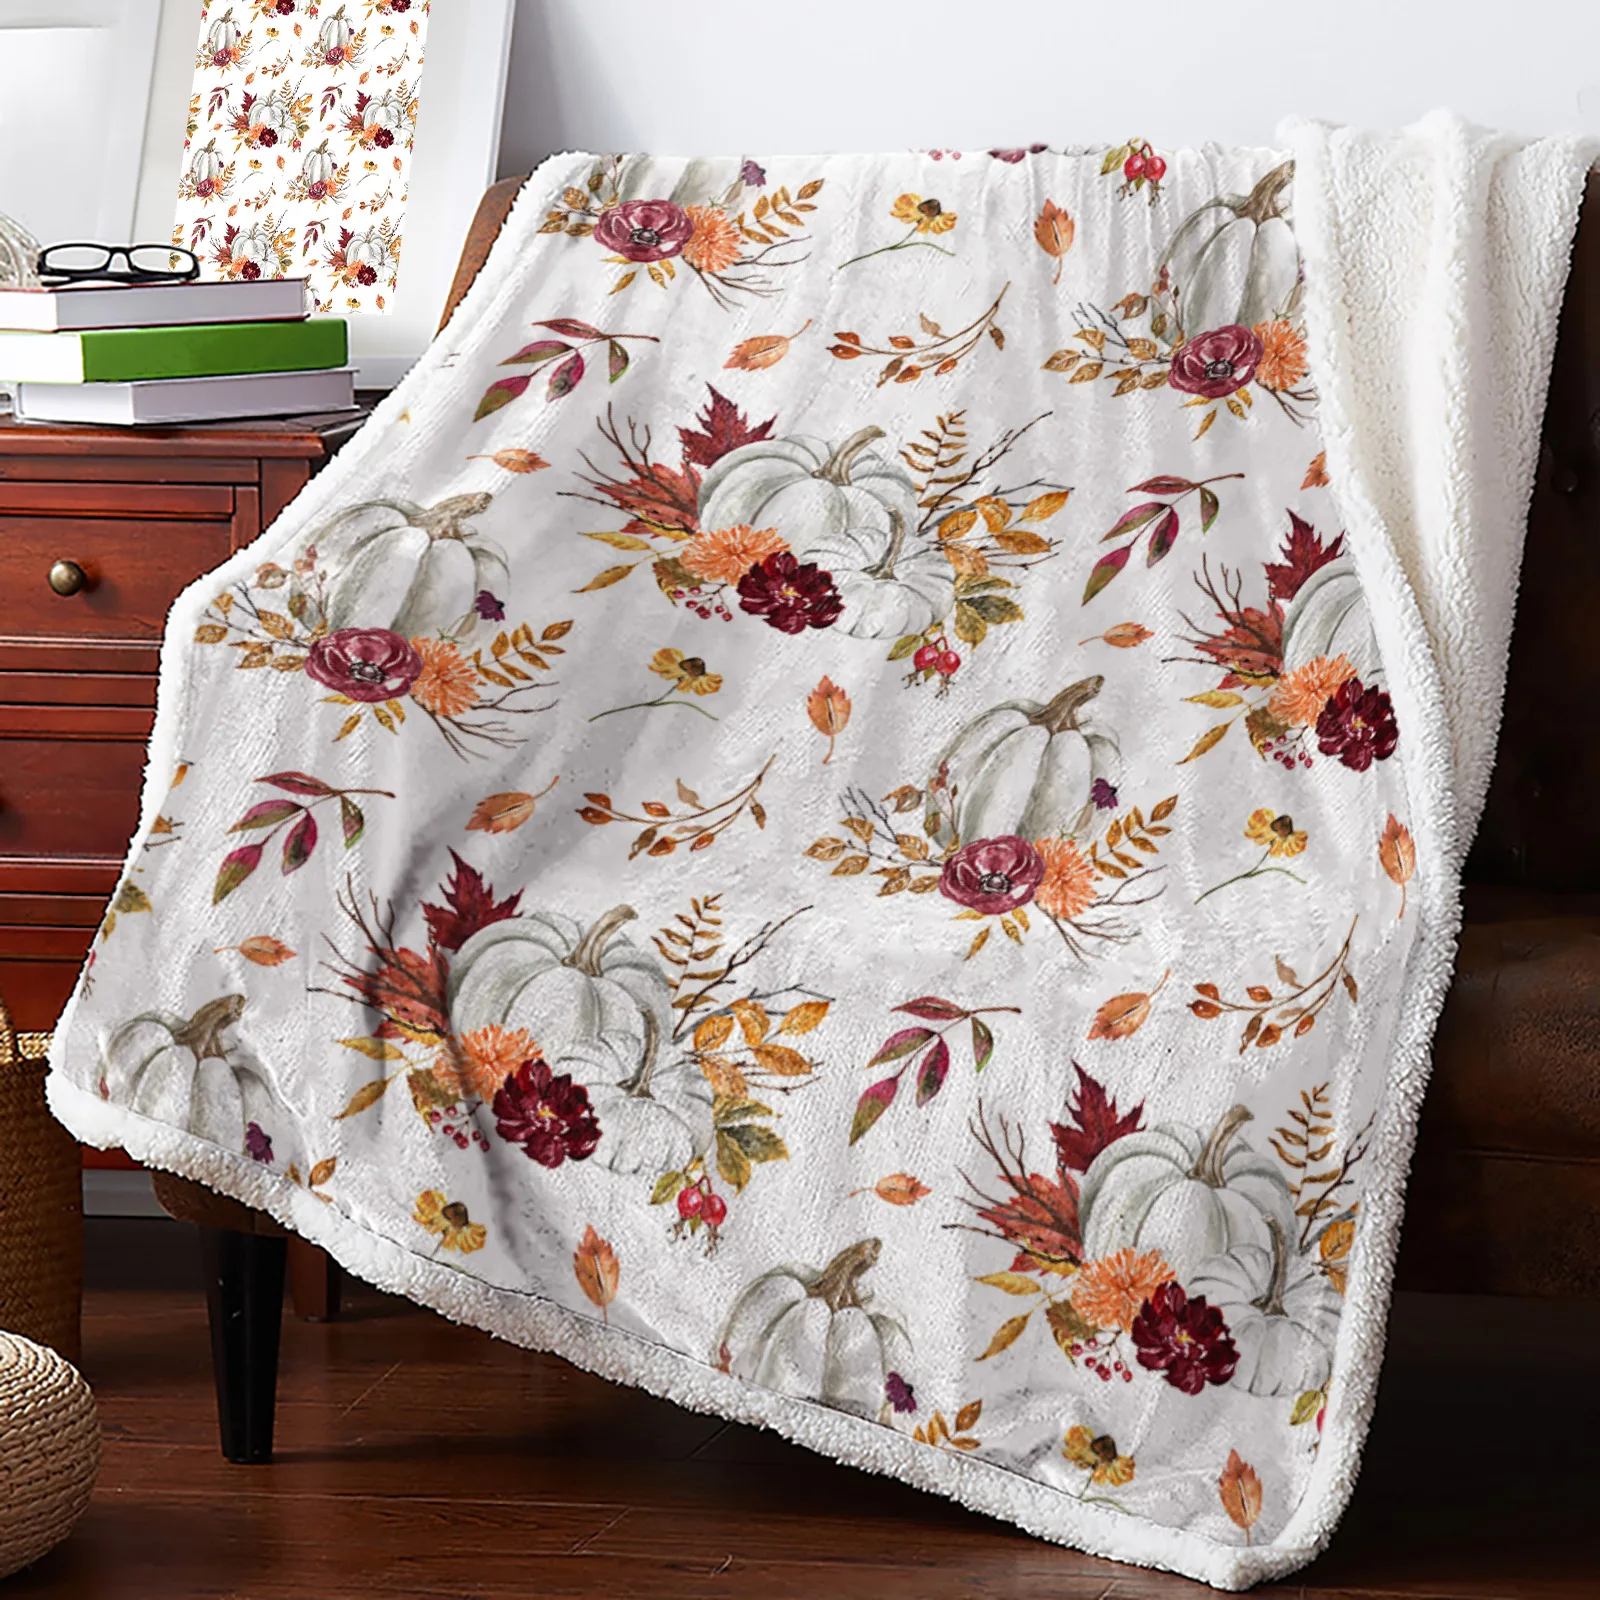 

Кашемировое одеяло с изображением кленового листа, тыквы на День Благодарения, зимнее теплое мягкое покрывало s для кровати, дивана, шерстяное одеяло, покрывало